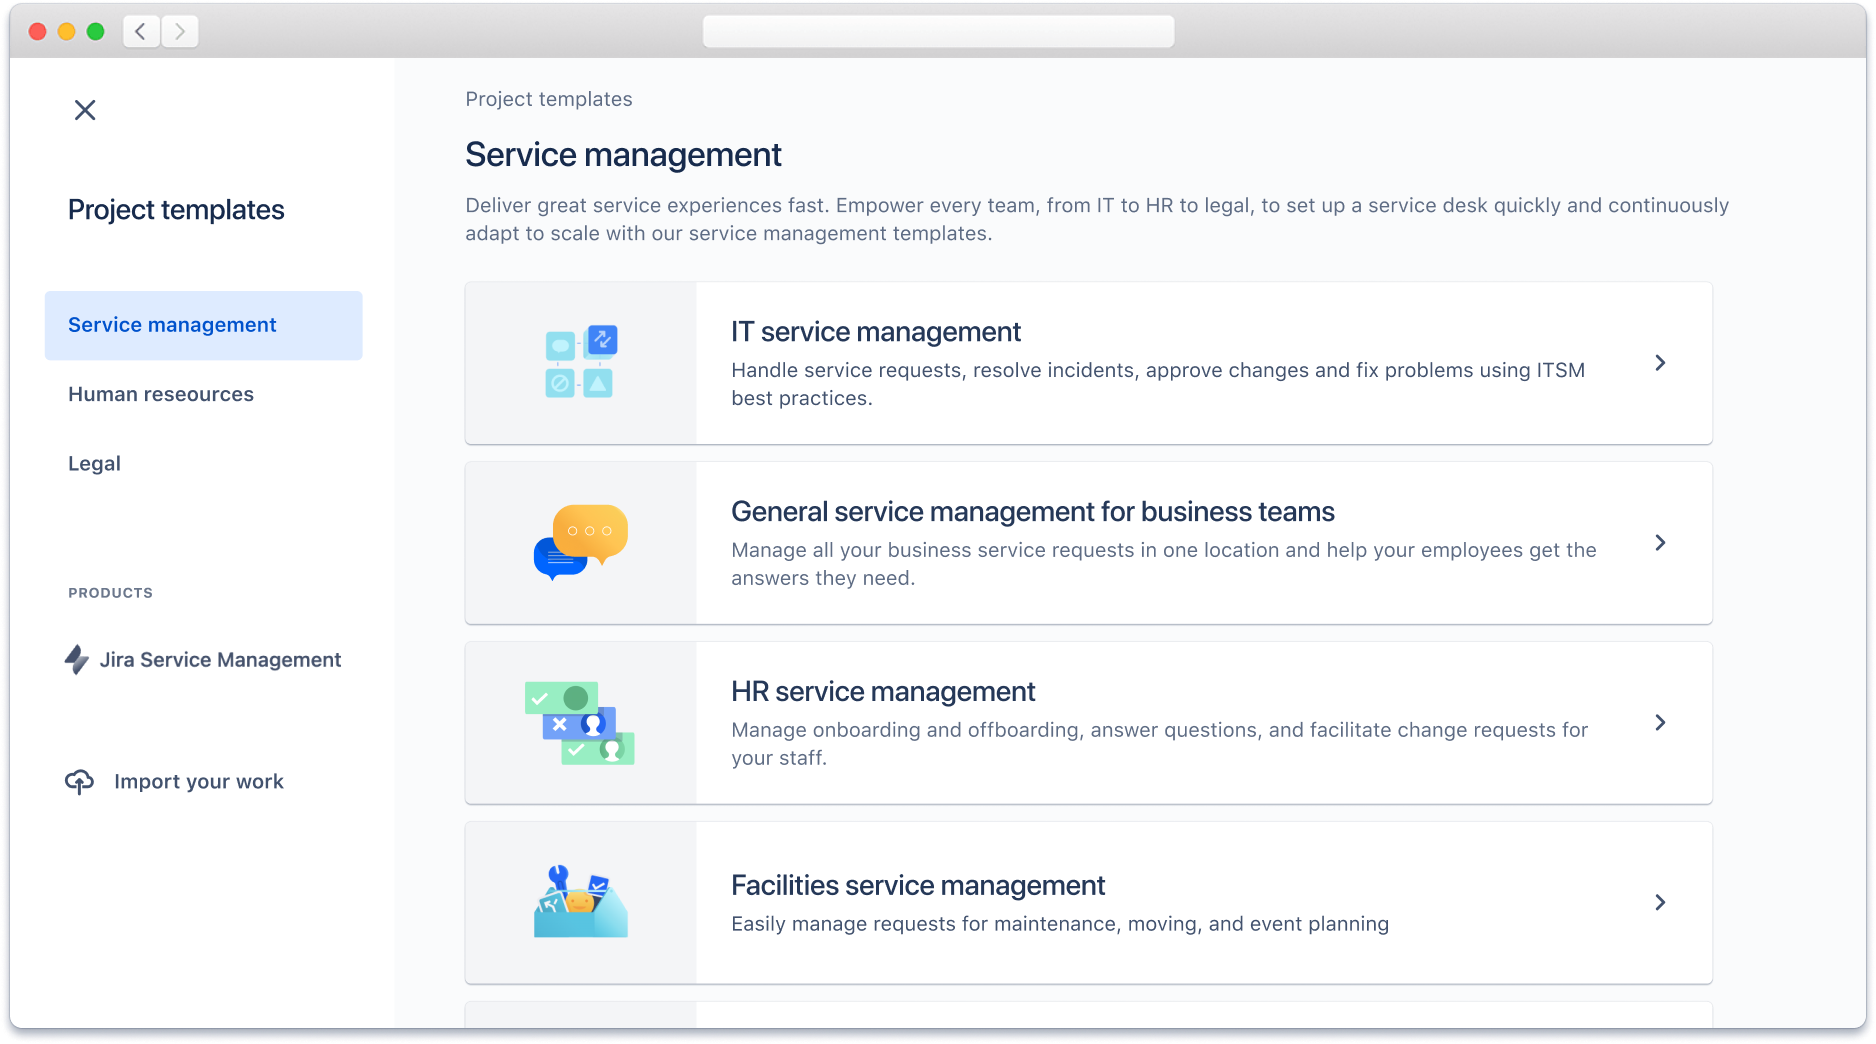 Szablony projektów zarządzania usługami dostępne w Jira Service Management